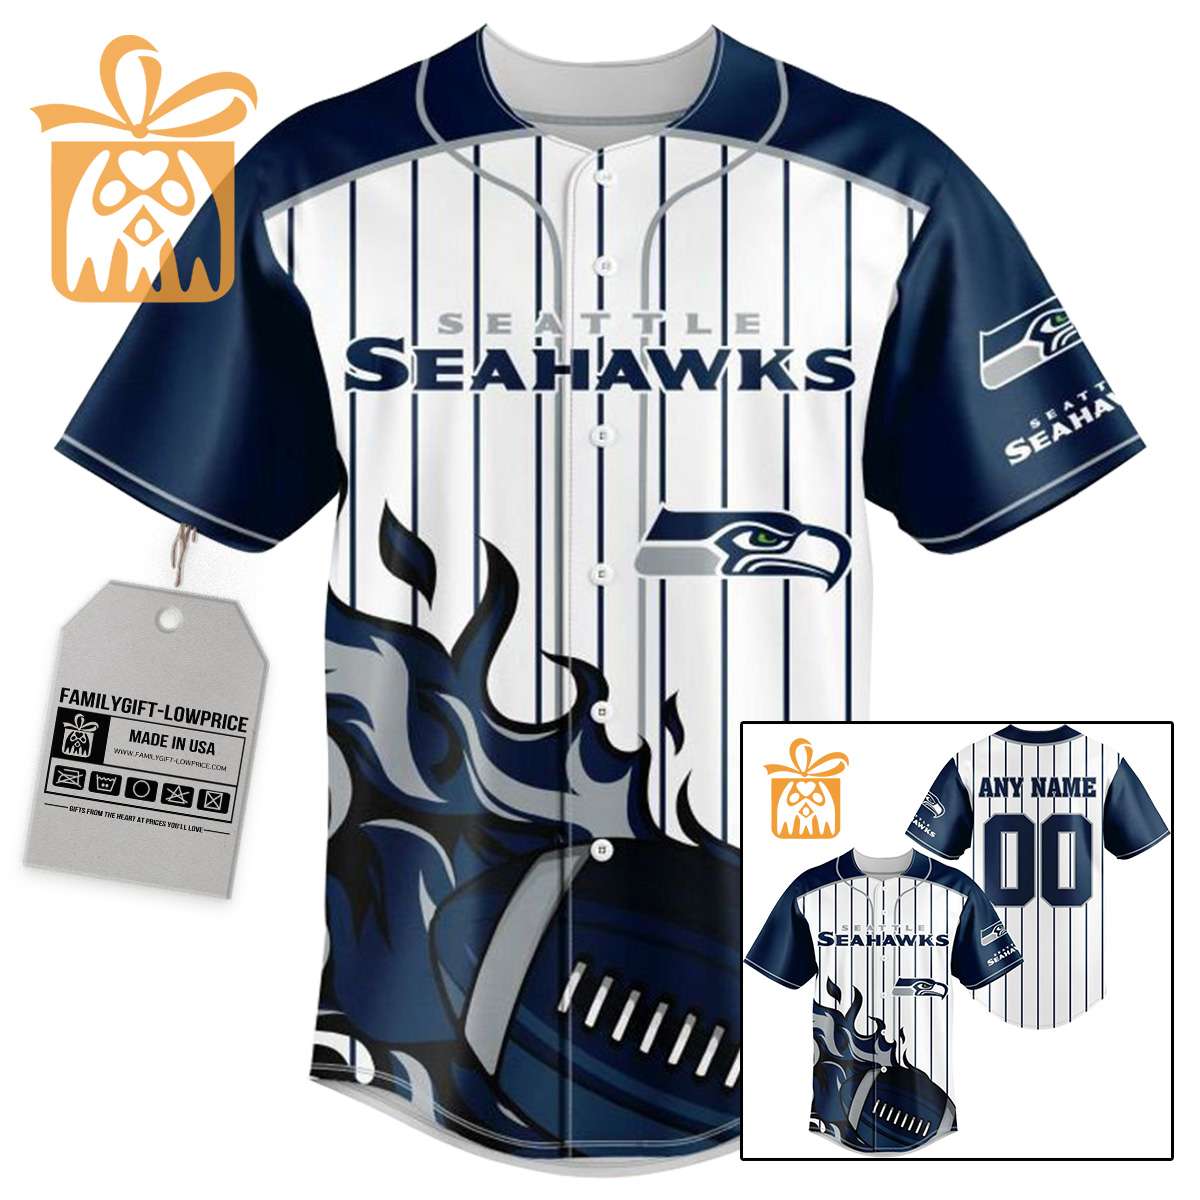 NFL Baseball Jersey - Seattle Seahawks Baseball Jersey TShirt - Personalized Baseball Jerseys